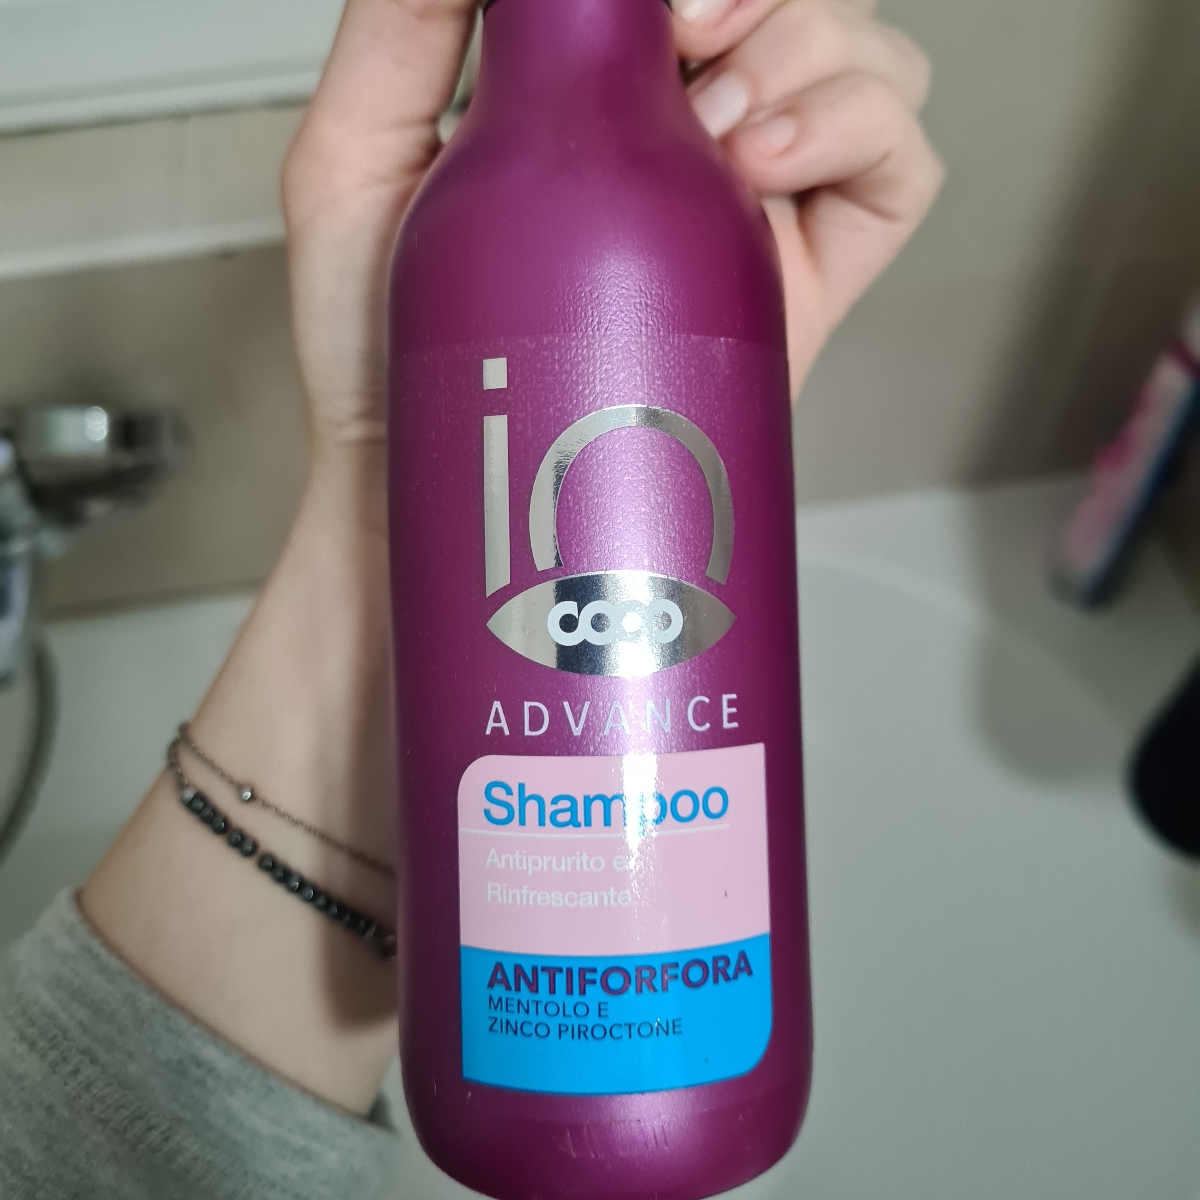 Recensioni su Shampoo advance antiforfora di Coop | abillion